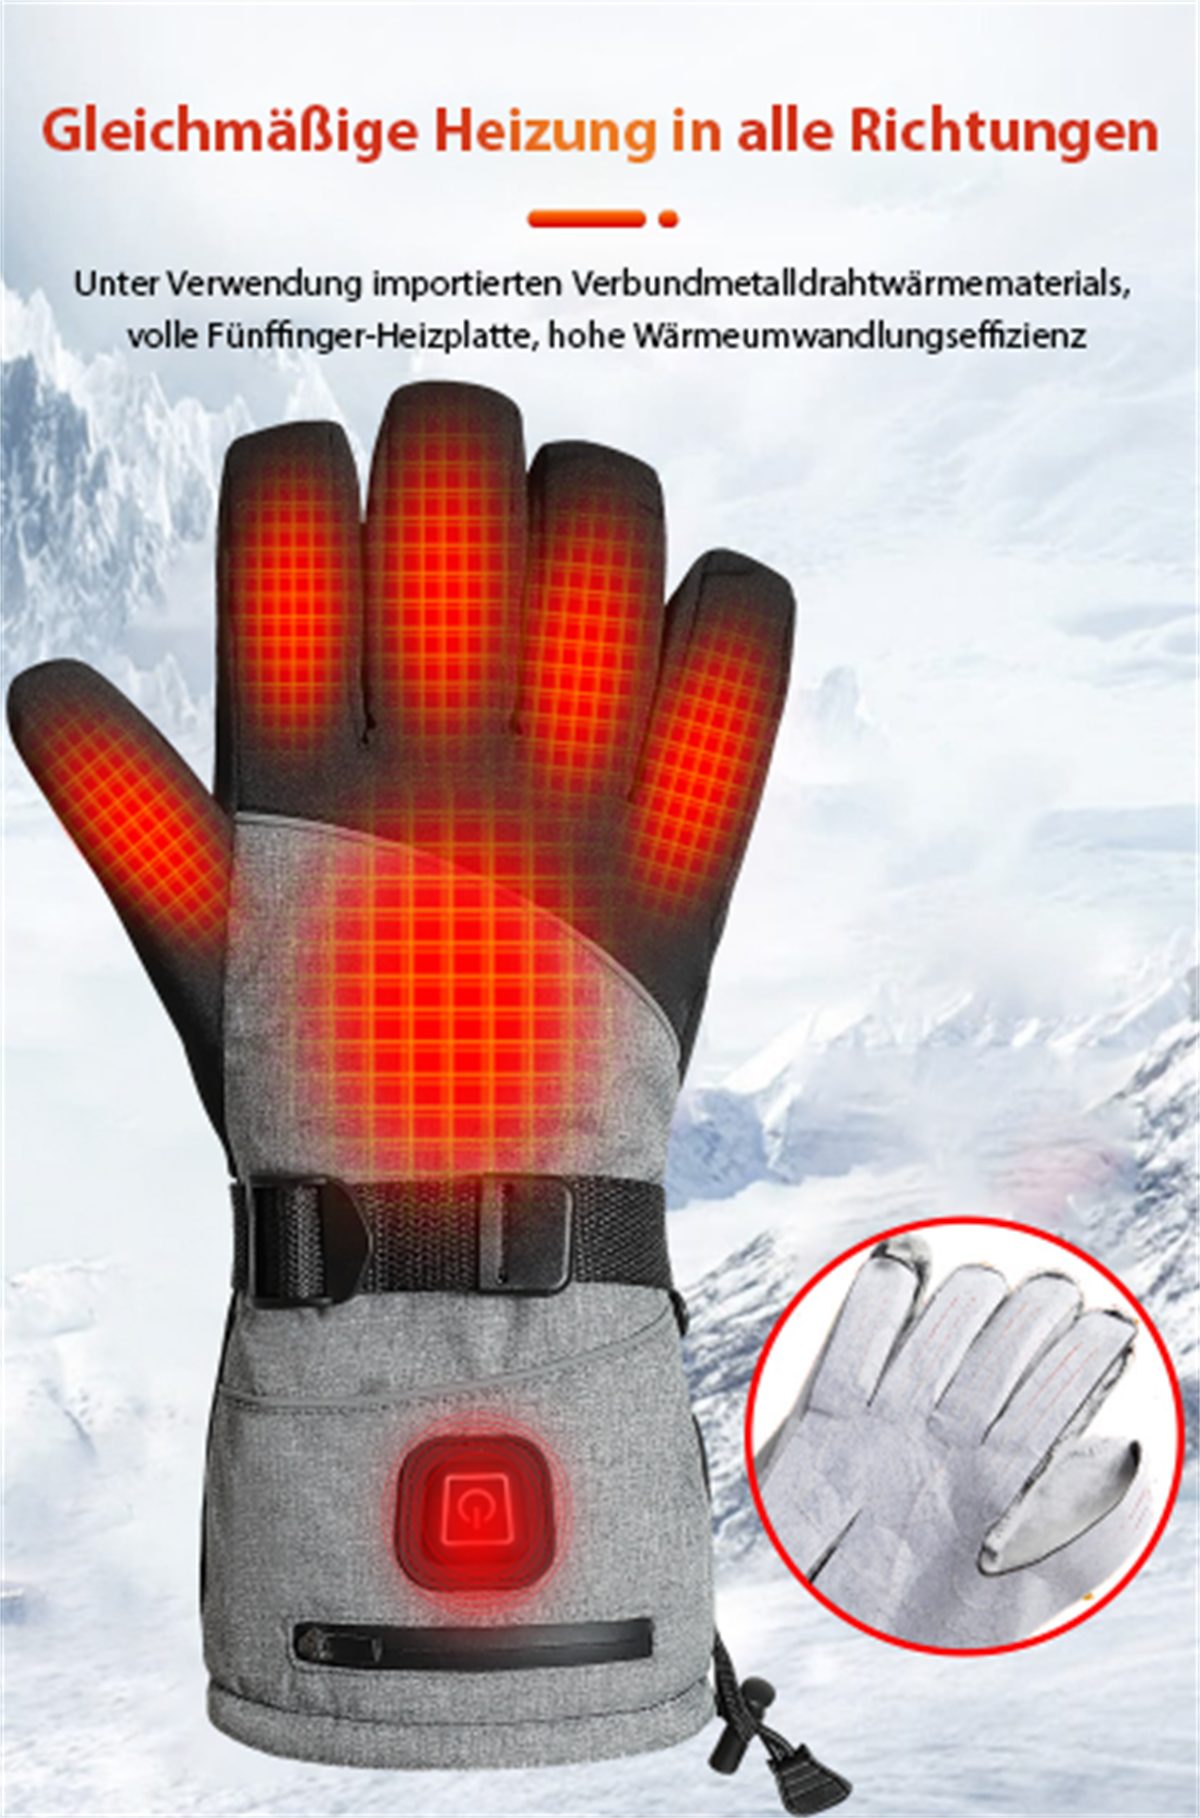 selected Smart-Heizhandschuhe und für carefully Warme Außenbereich Handschuhe Batteriekasten Winter-Arbeitshandschuhe und + den Schwarze graue wasserdichte